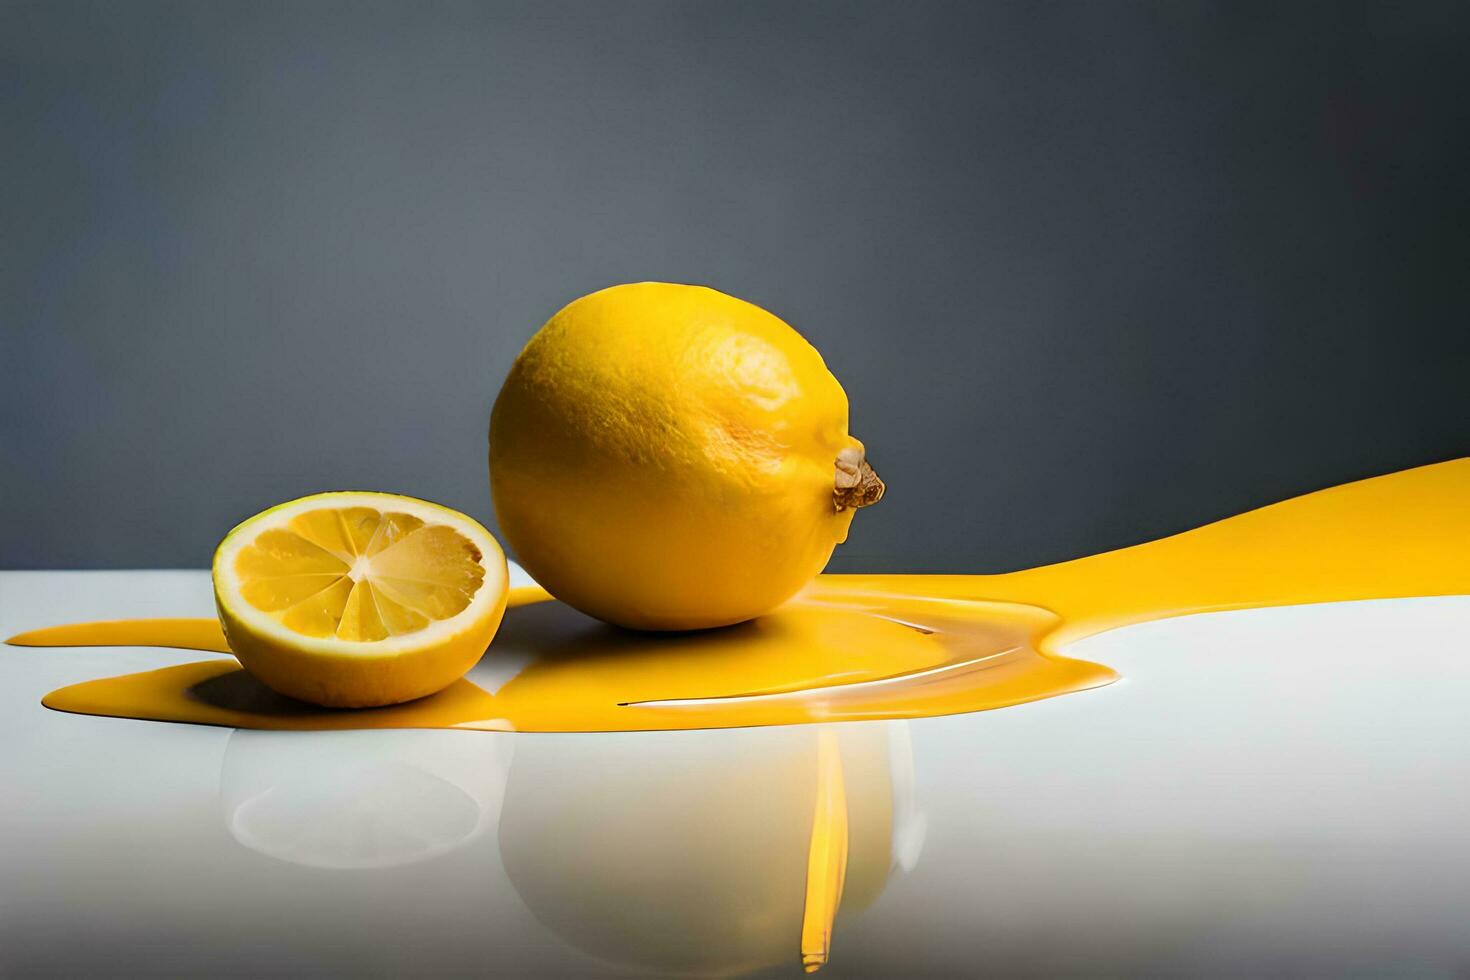 limão fruta Como gotejamento arte dentro uma colorida amarelo fundo foto